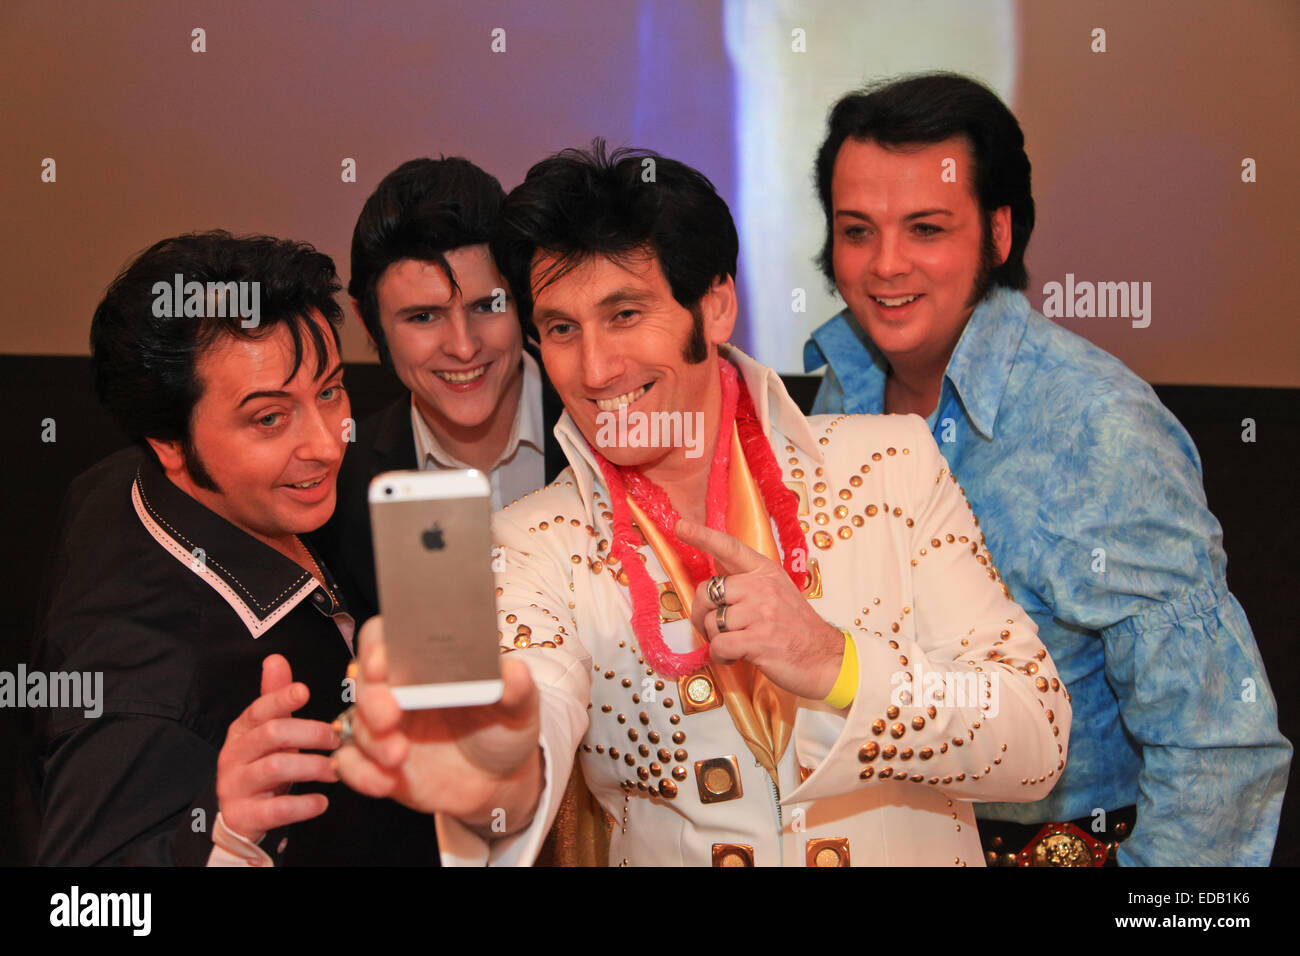 Quatre imitateurs d'Elvis Presley hommage ou artistes posent pour une photographie selfies, lors d'un concours, UK Banque D'Images